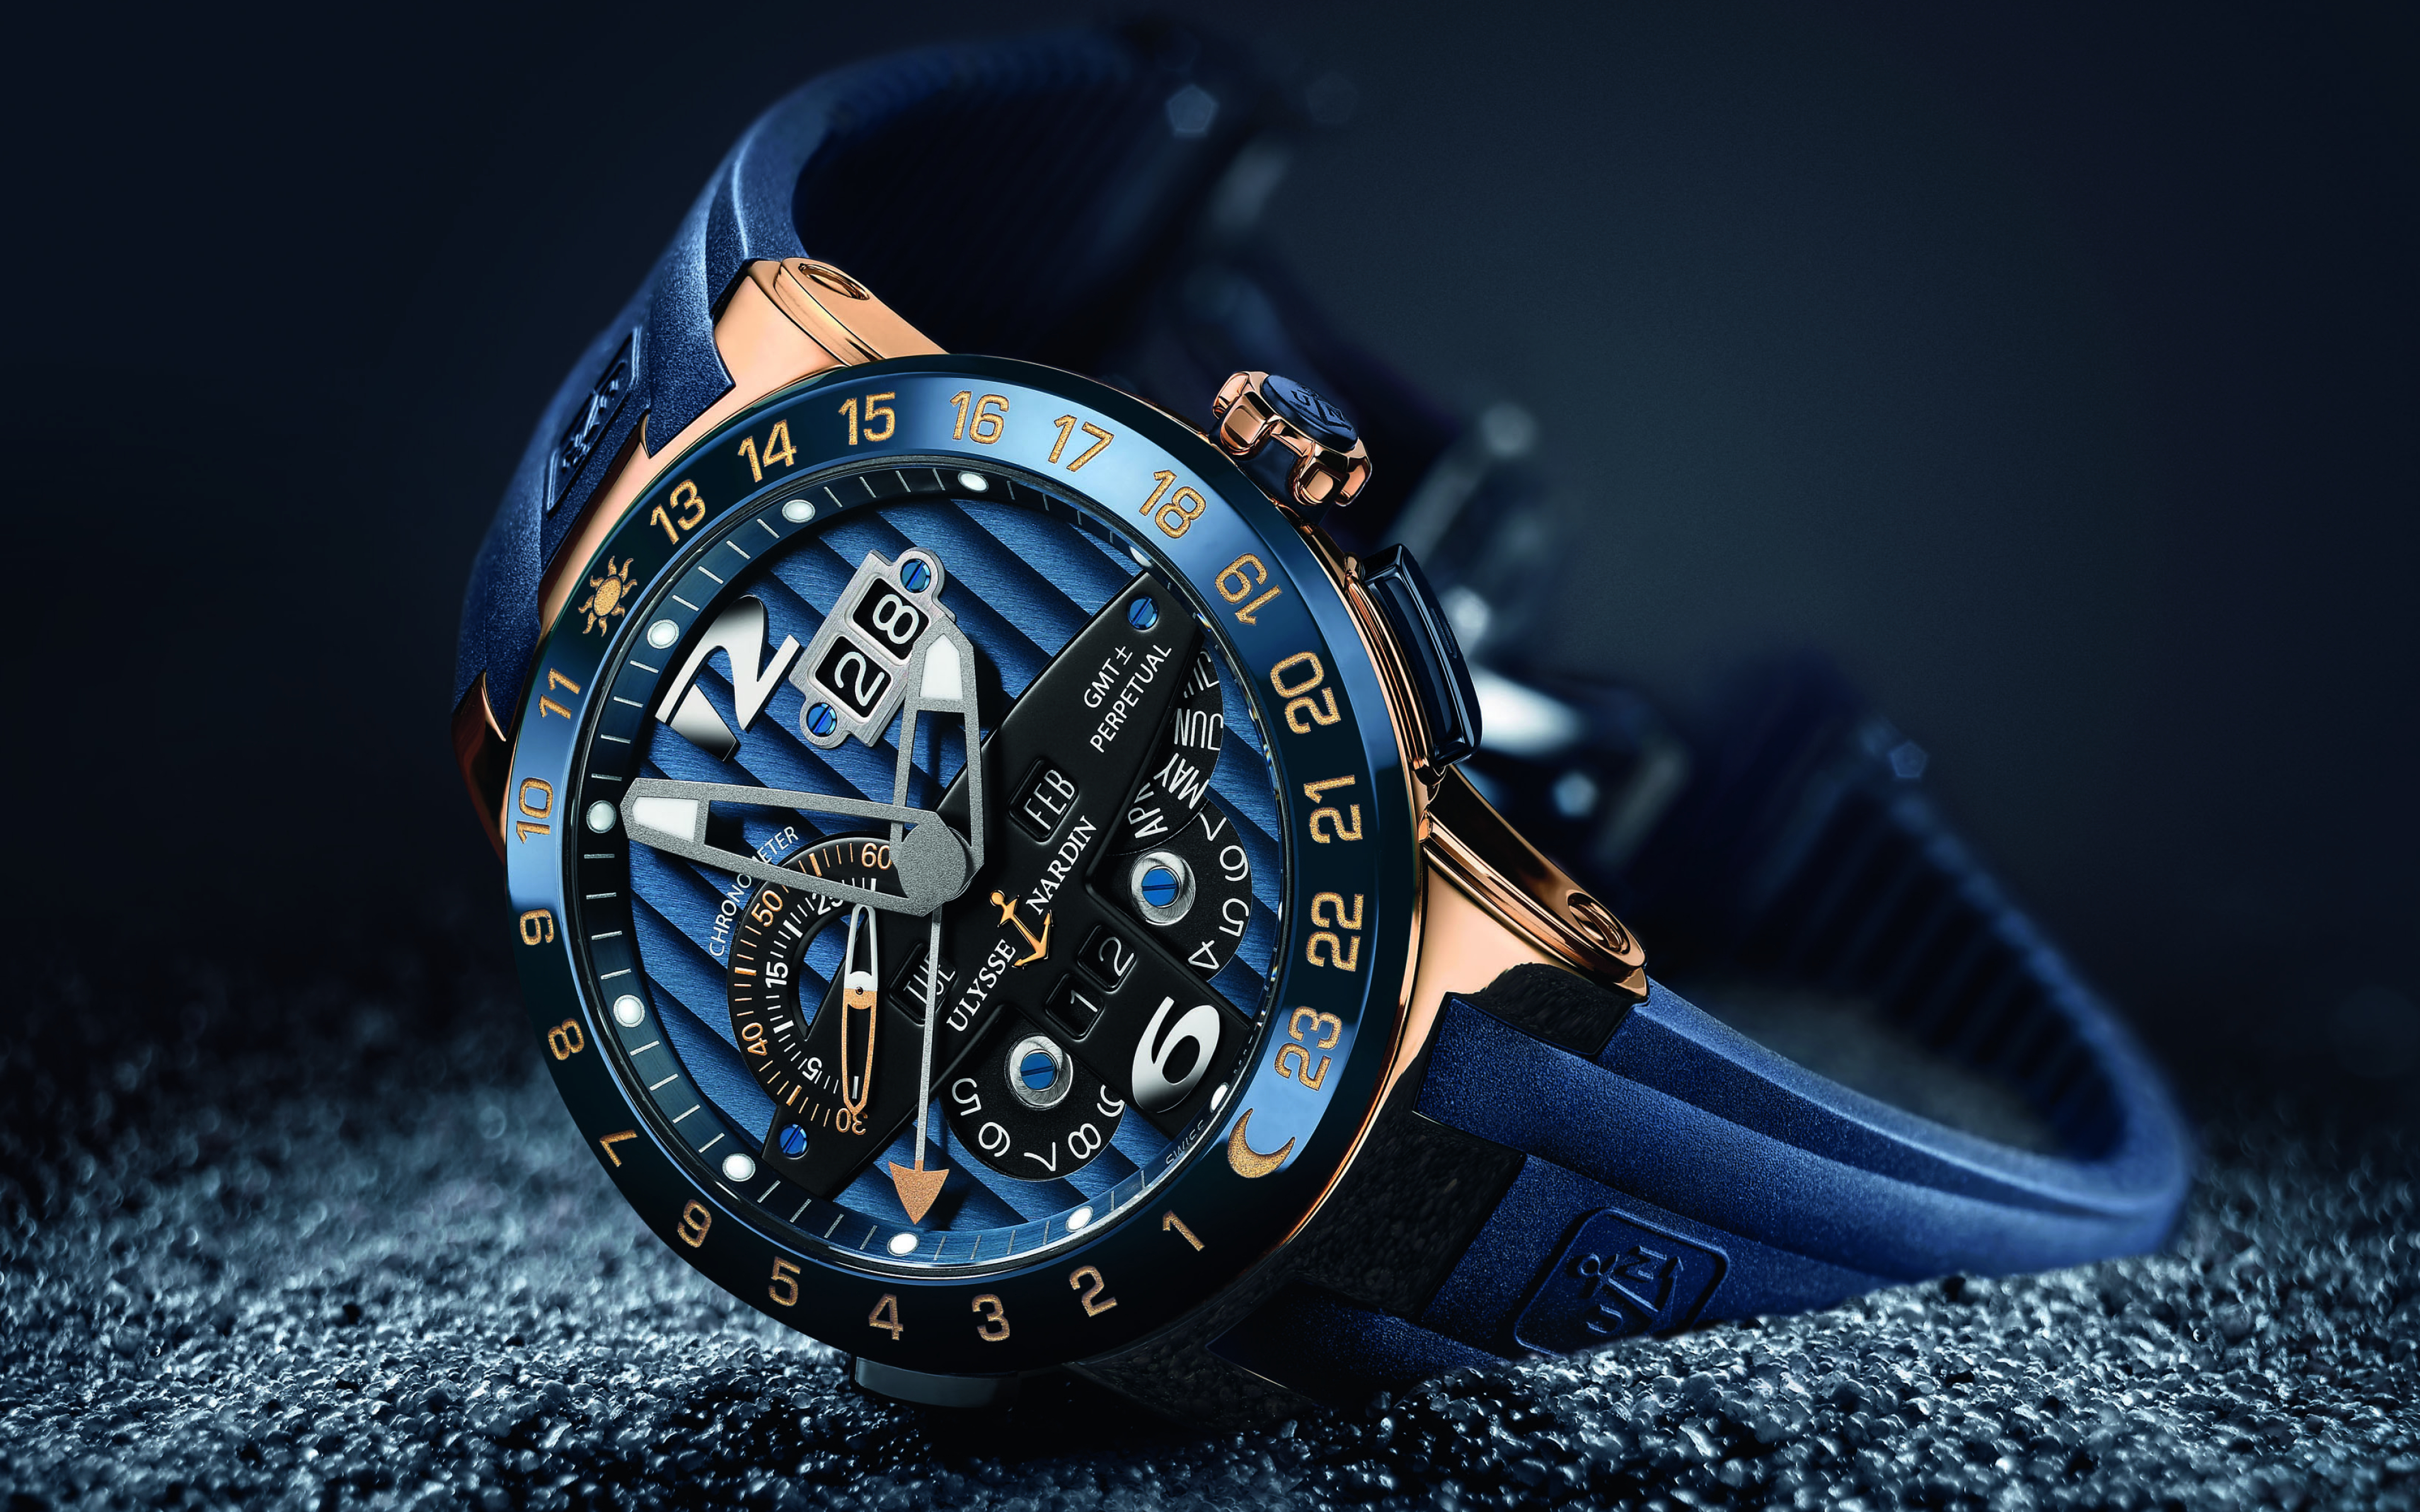 Фон наручные часы. Часы Улисс Нордин. Улисс Нордин часы мужские. Швейцарские часы мужские Ulysse Nardin. Часы Луис Нардин синие.